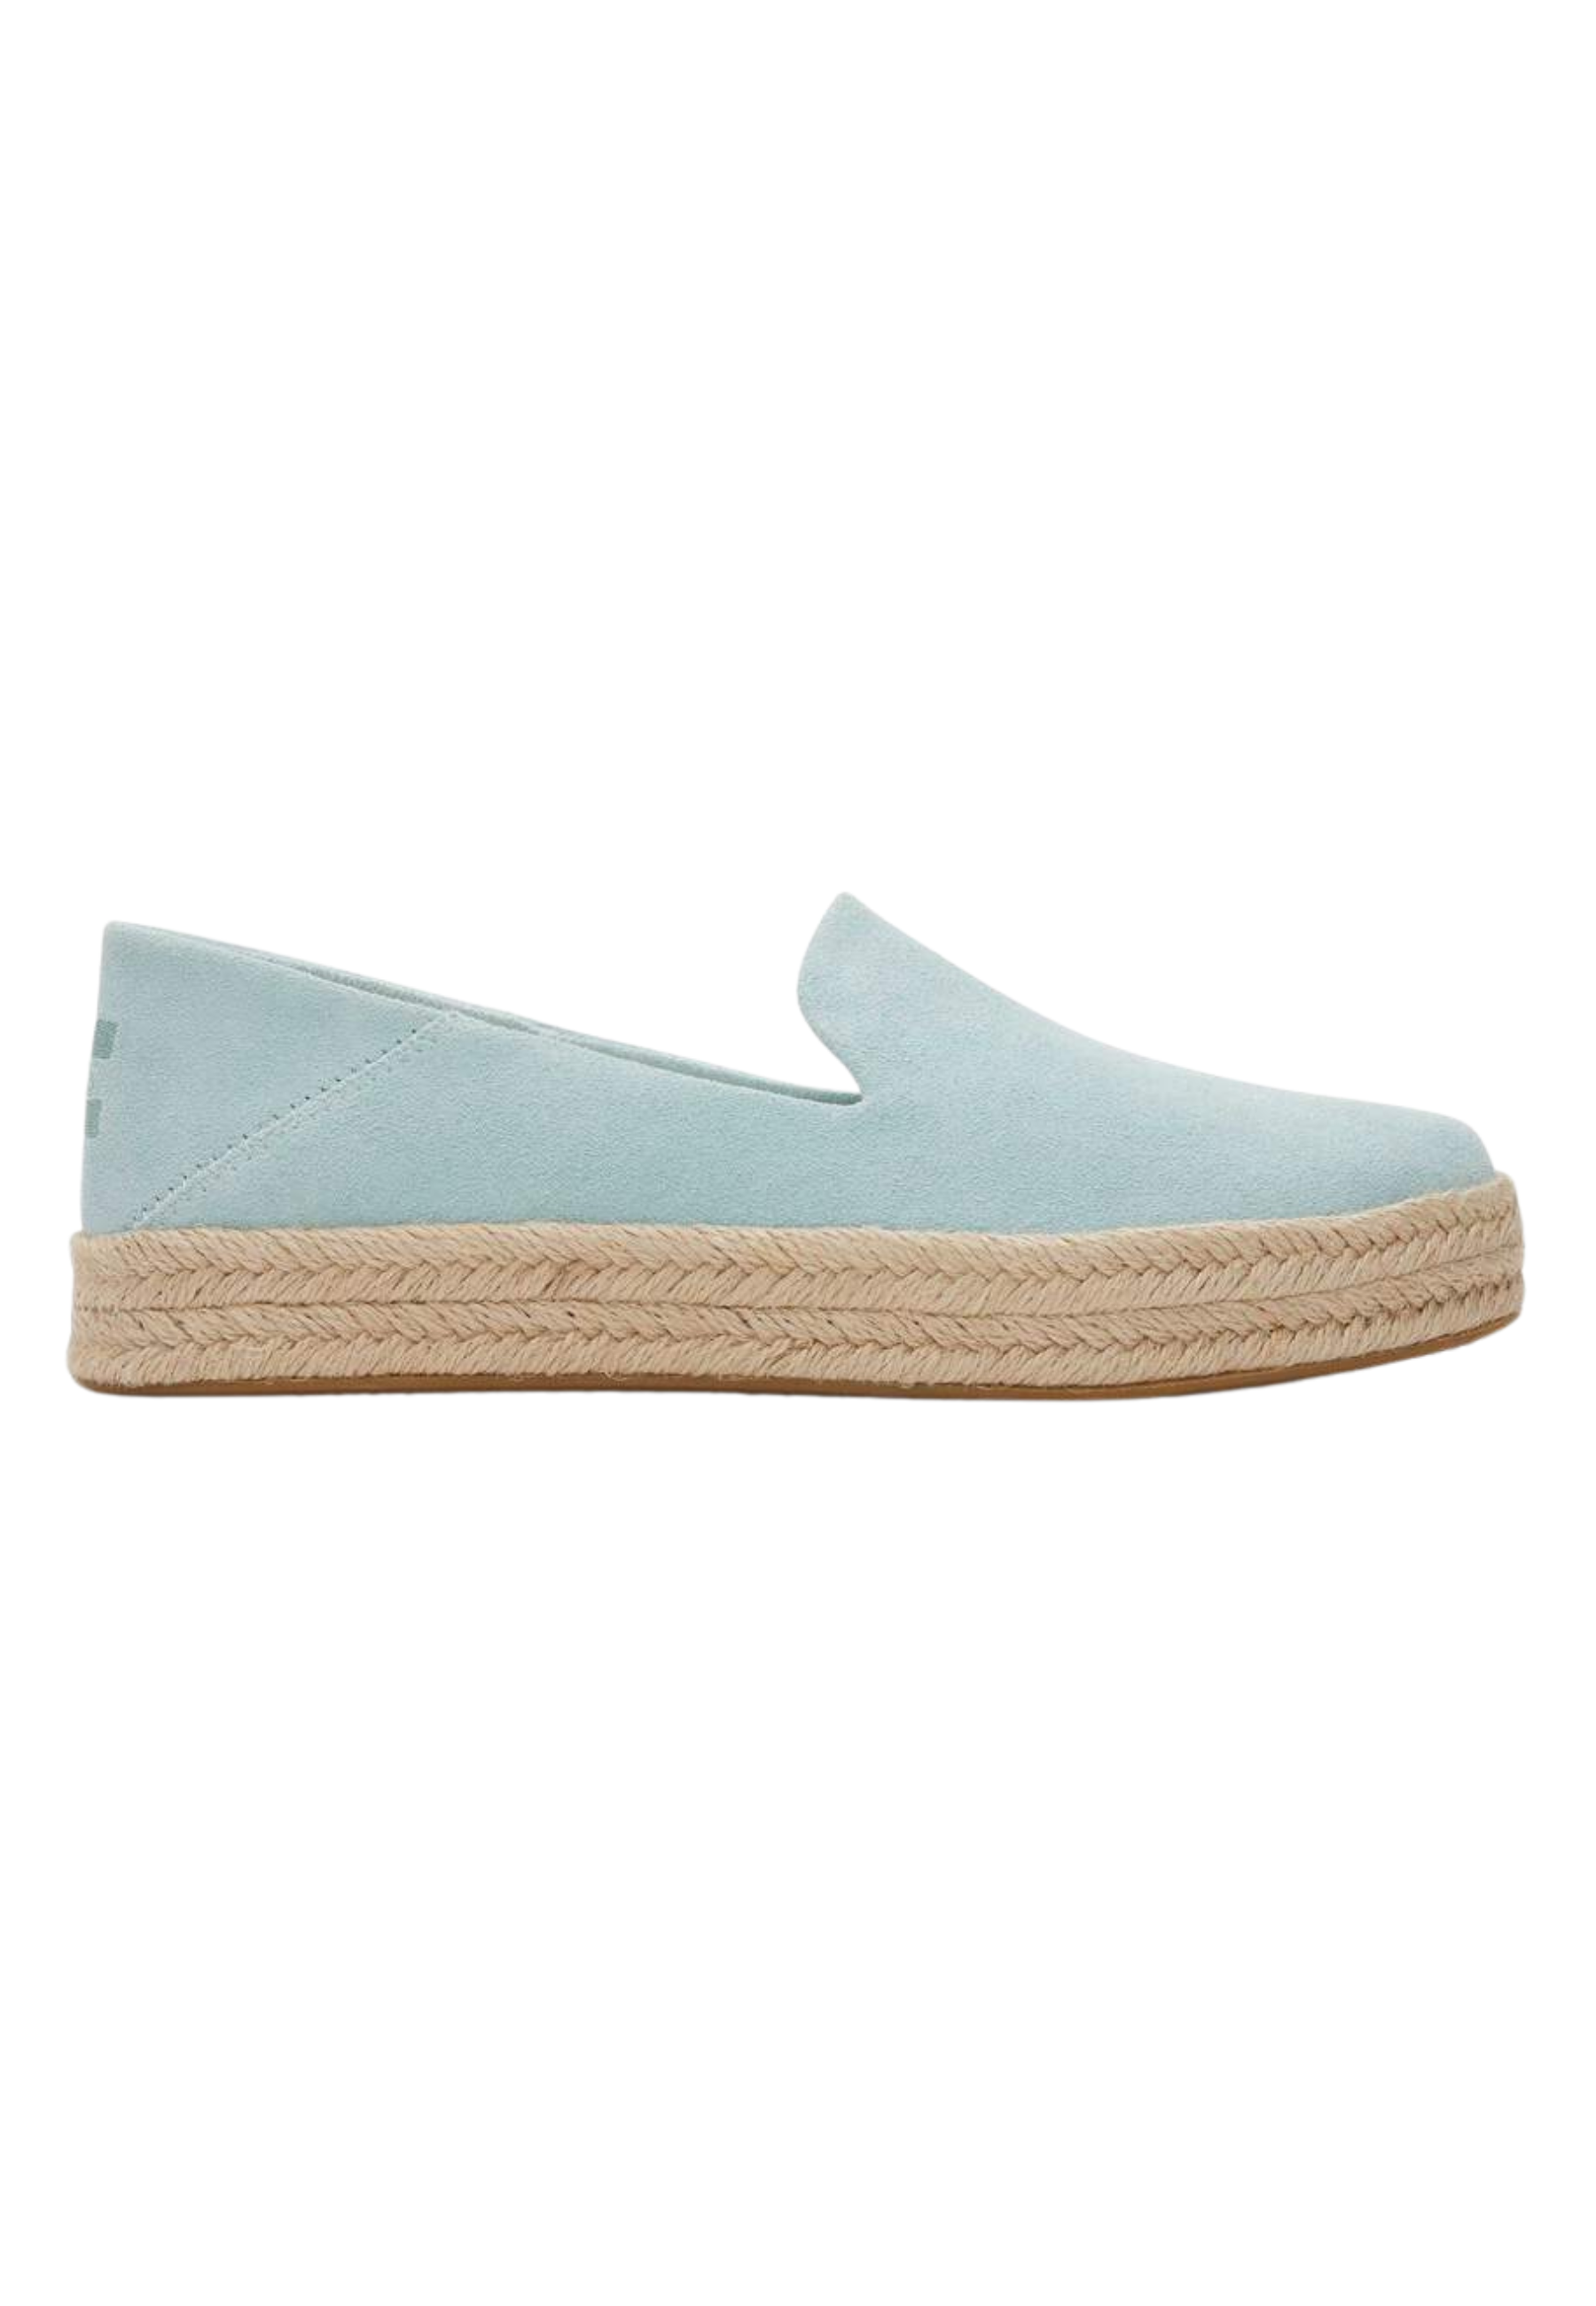 Schoenen Lichtblauw Carolina loafers lichtblauw